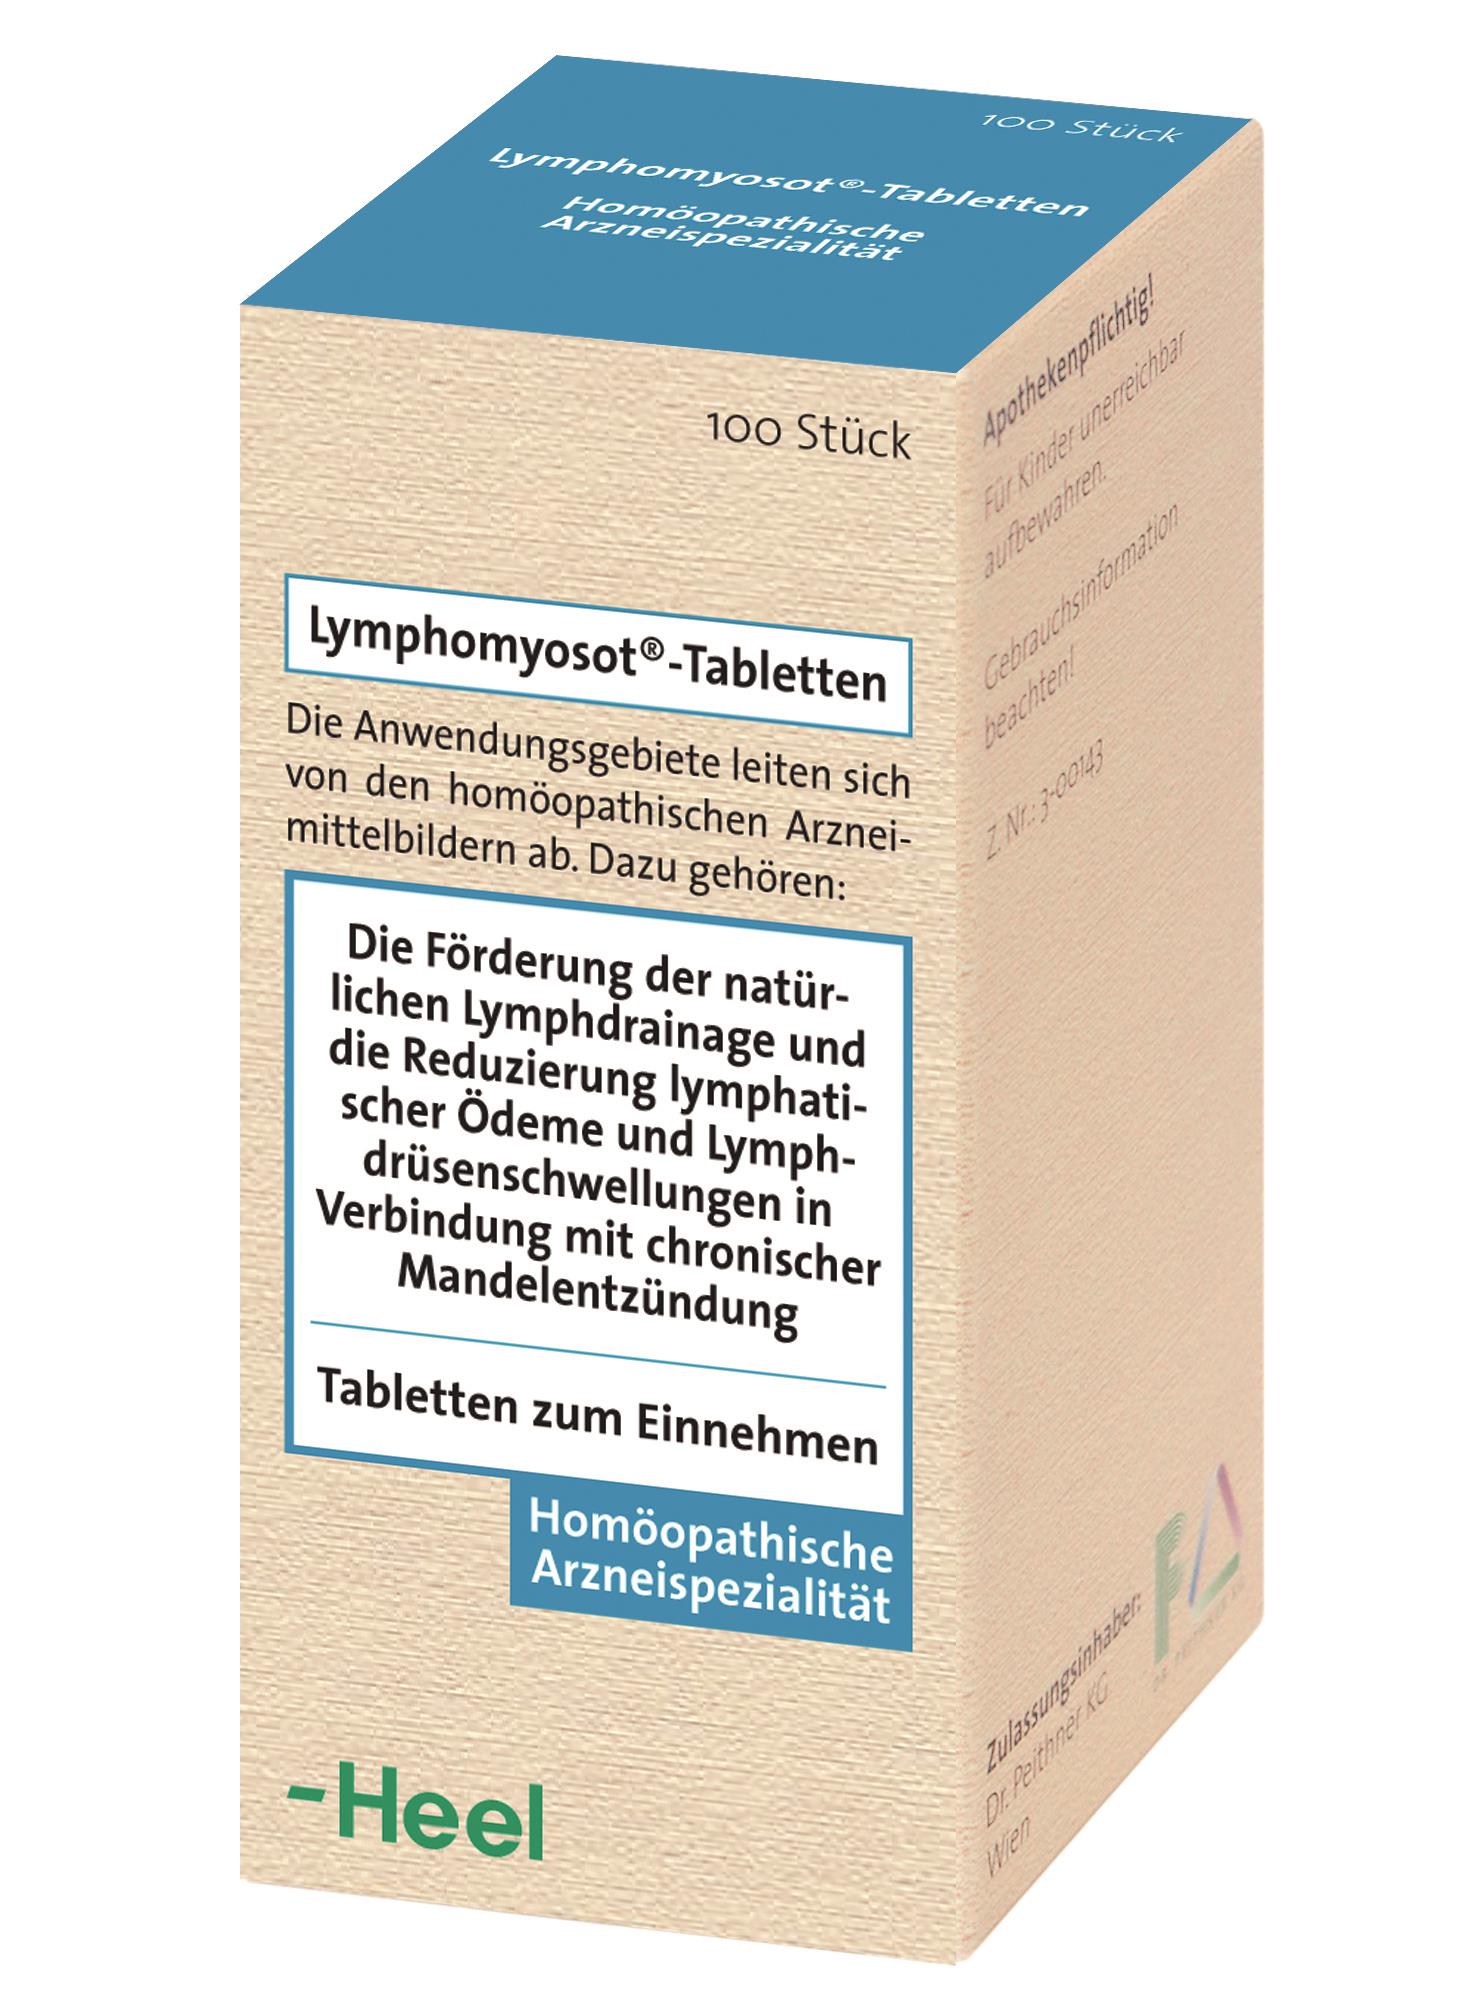 Lymphomyosot® Tabletten